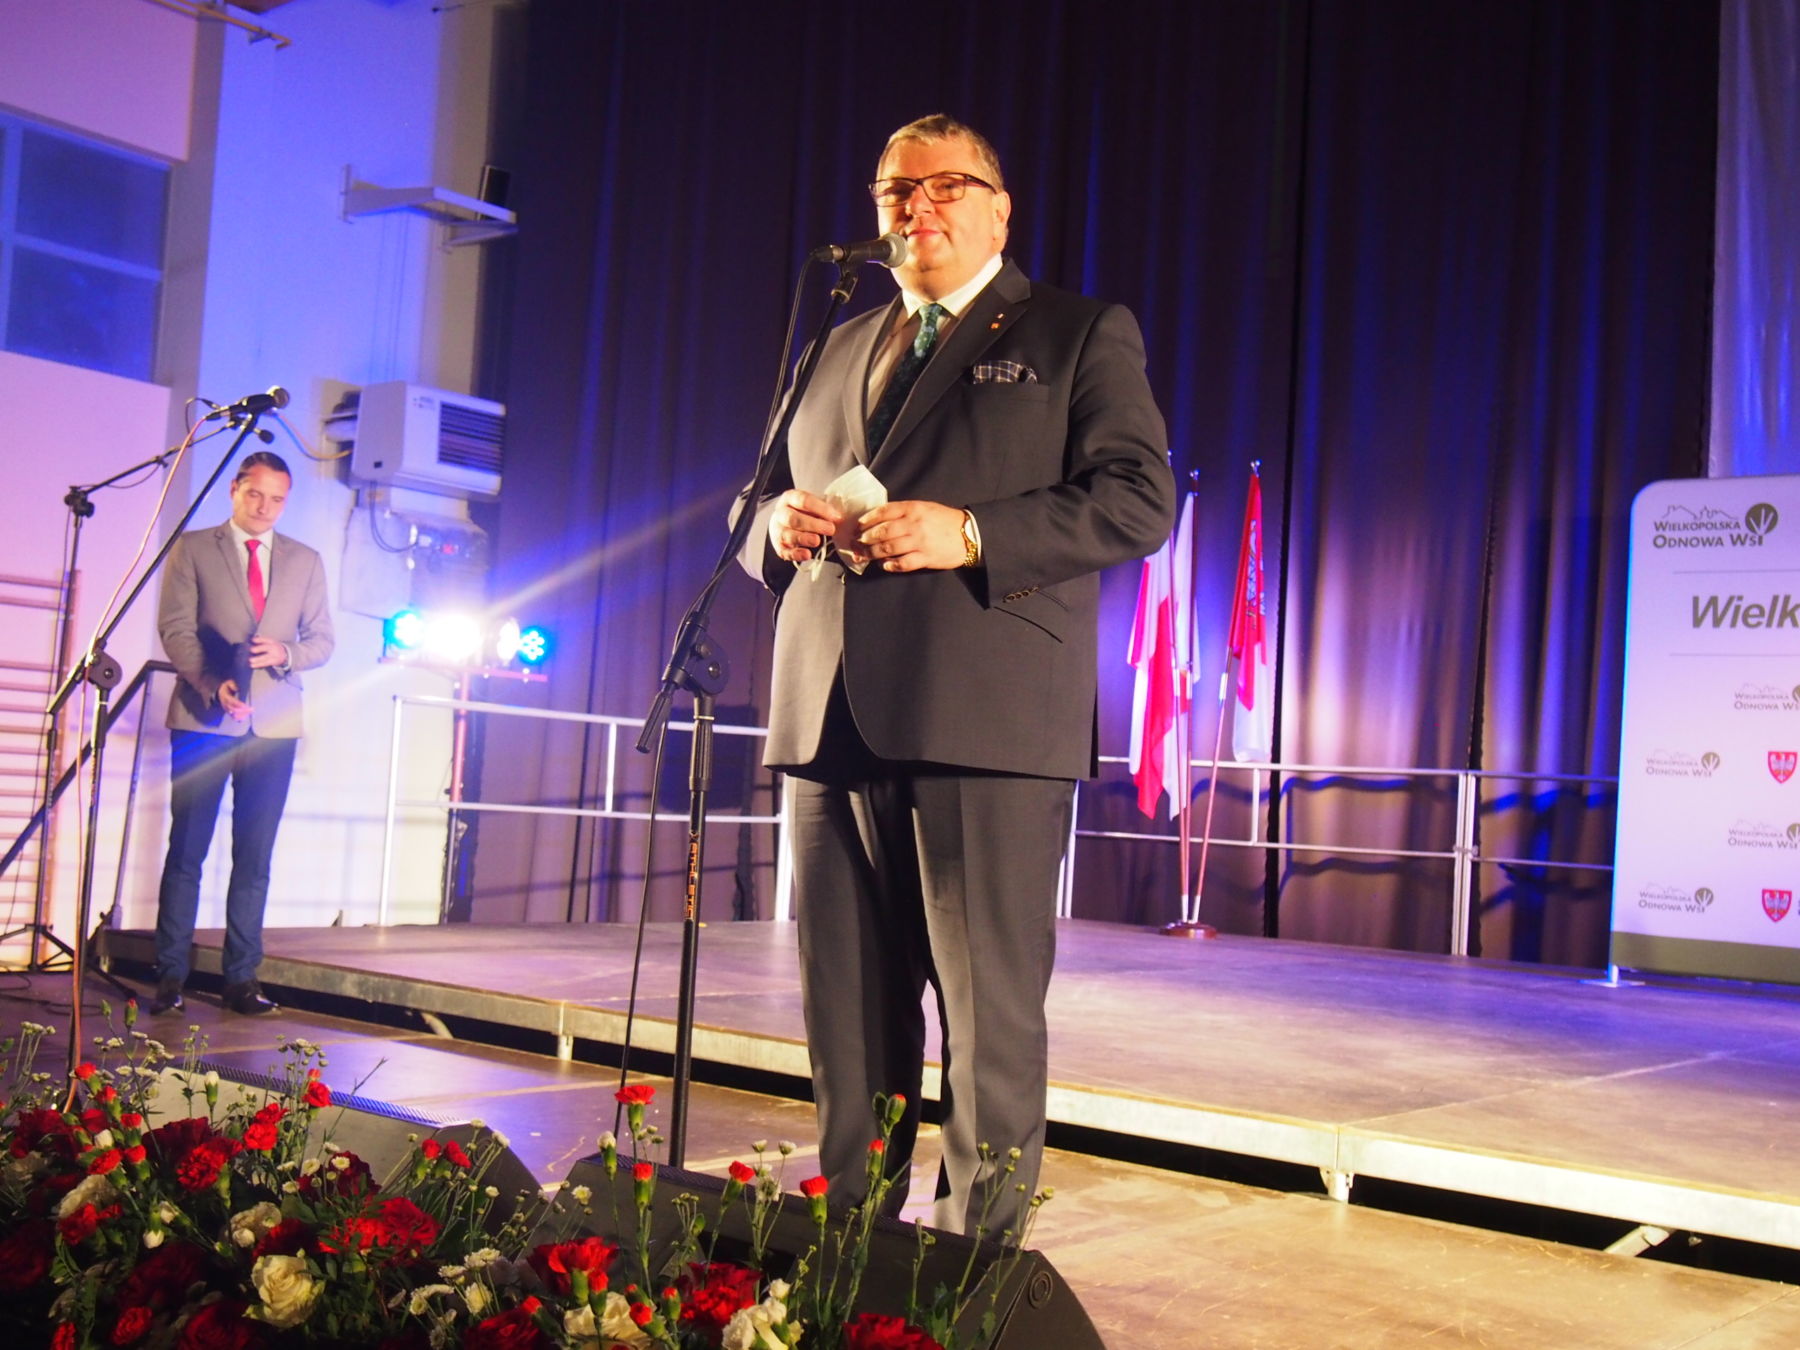 Krzysztof Grabowski Wicemarszałek Województwa Wielkopolskiego na scenie podczas przemówienia